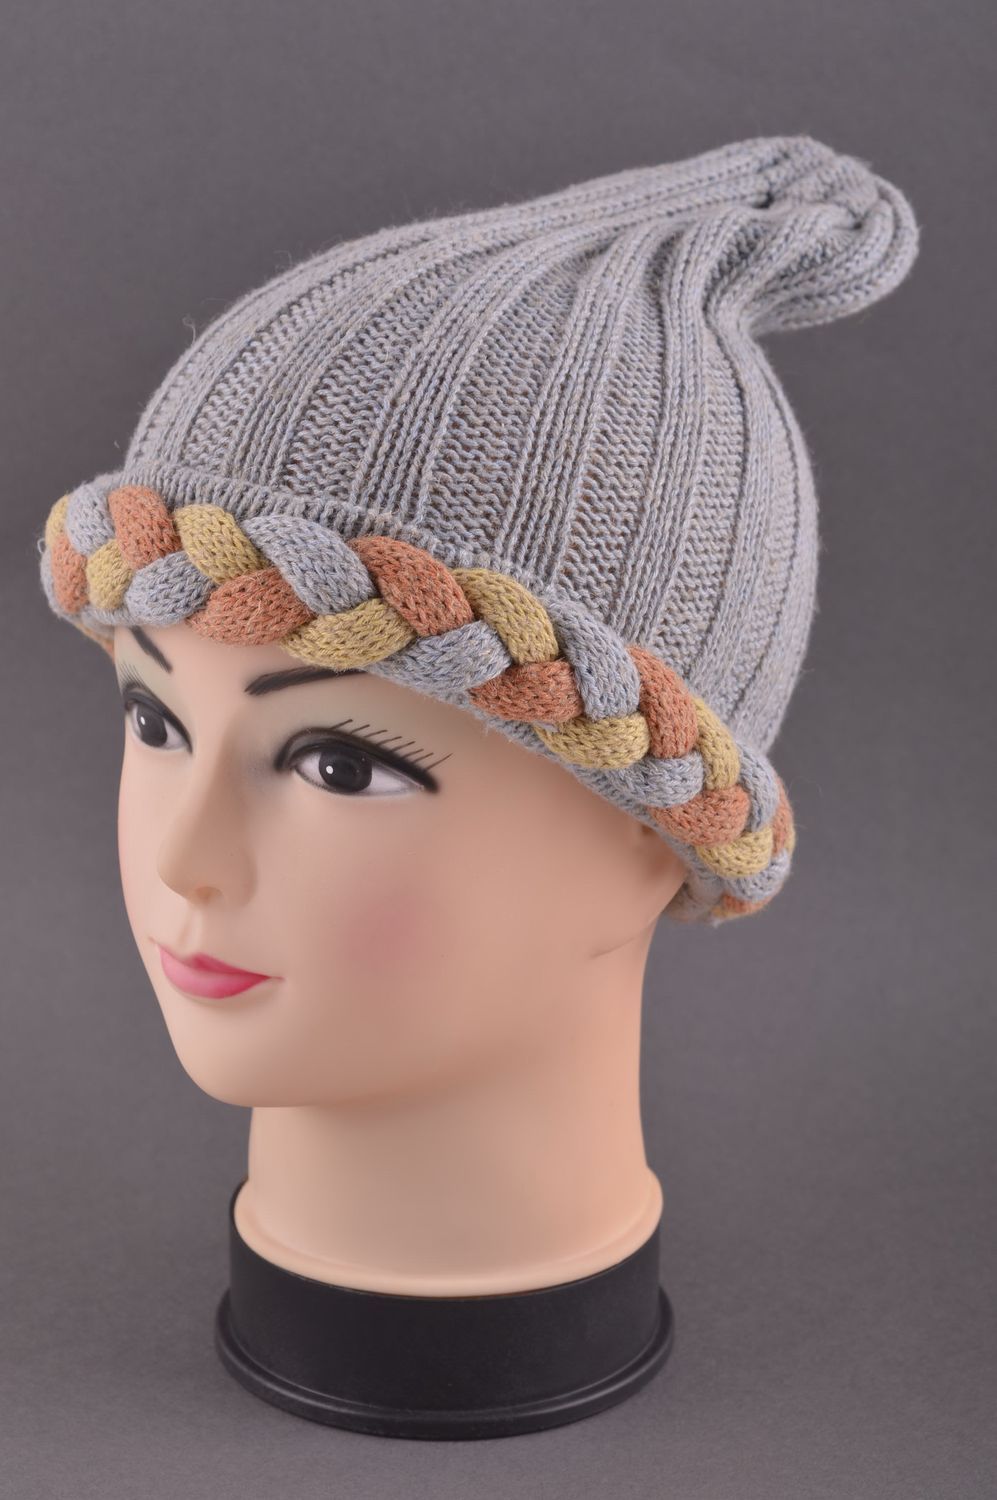 Handmade winter hat women hat knitted hat warm winter hat warm accessories photo 1